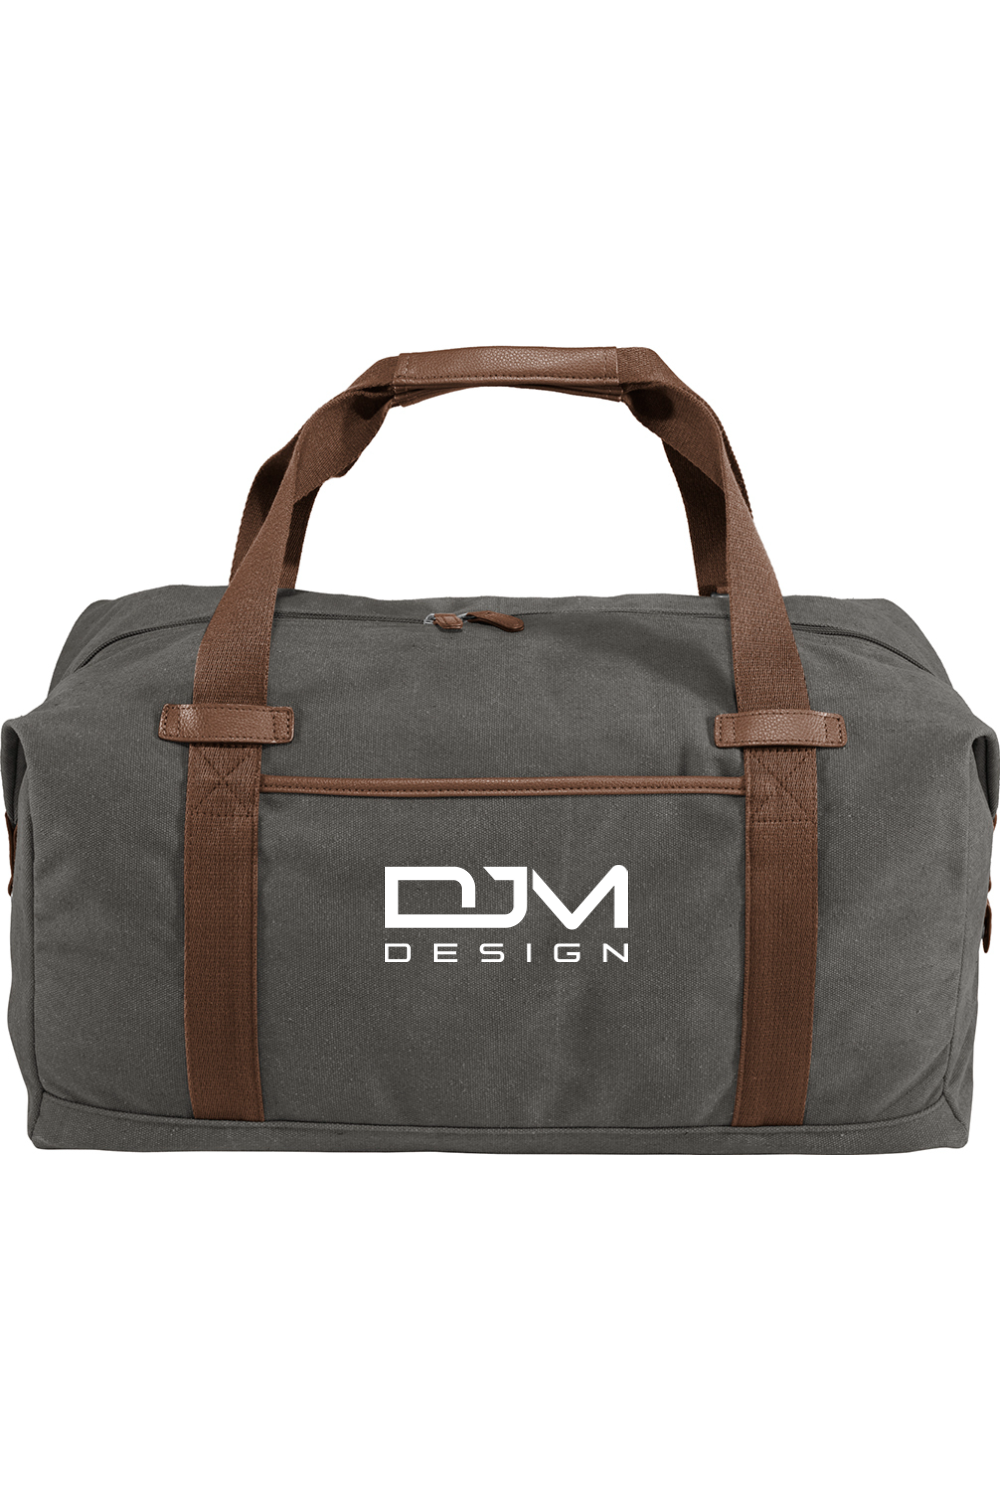 DJM.Design™ Premium Cotton Canvas Duffel (Ai Workshop 3K Leads Access) 100 Points